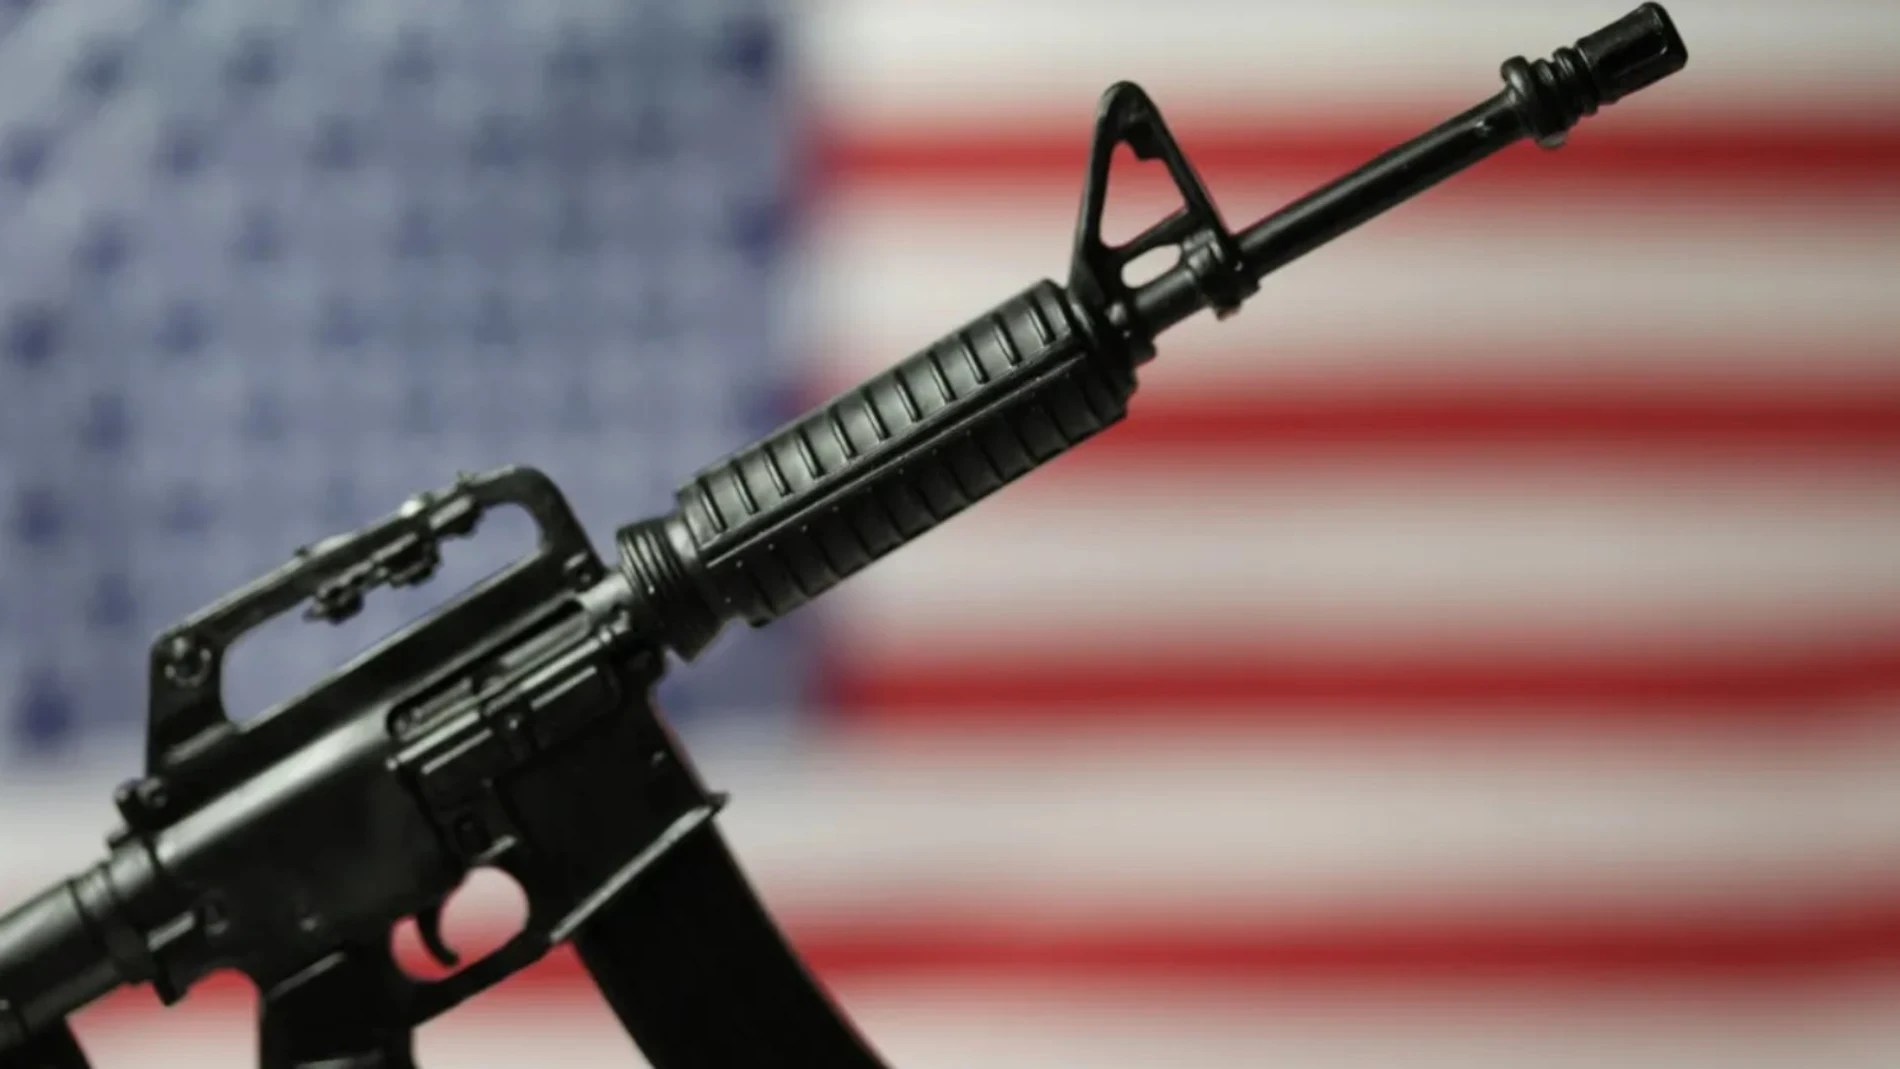 Fusil AR-15, así es el arma utilizada para disparar a Donald Trump